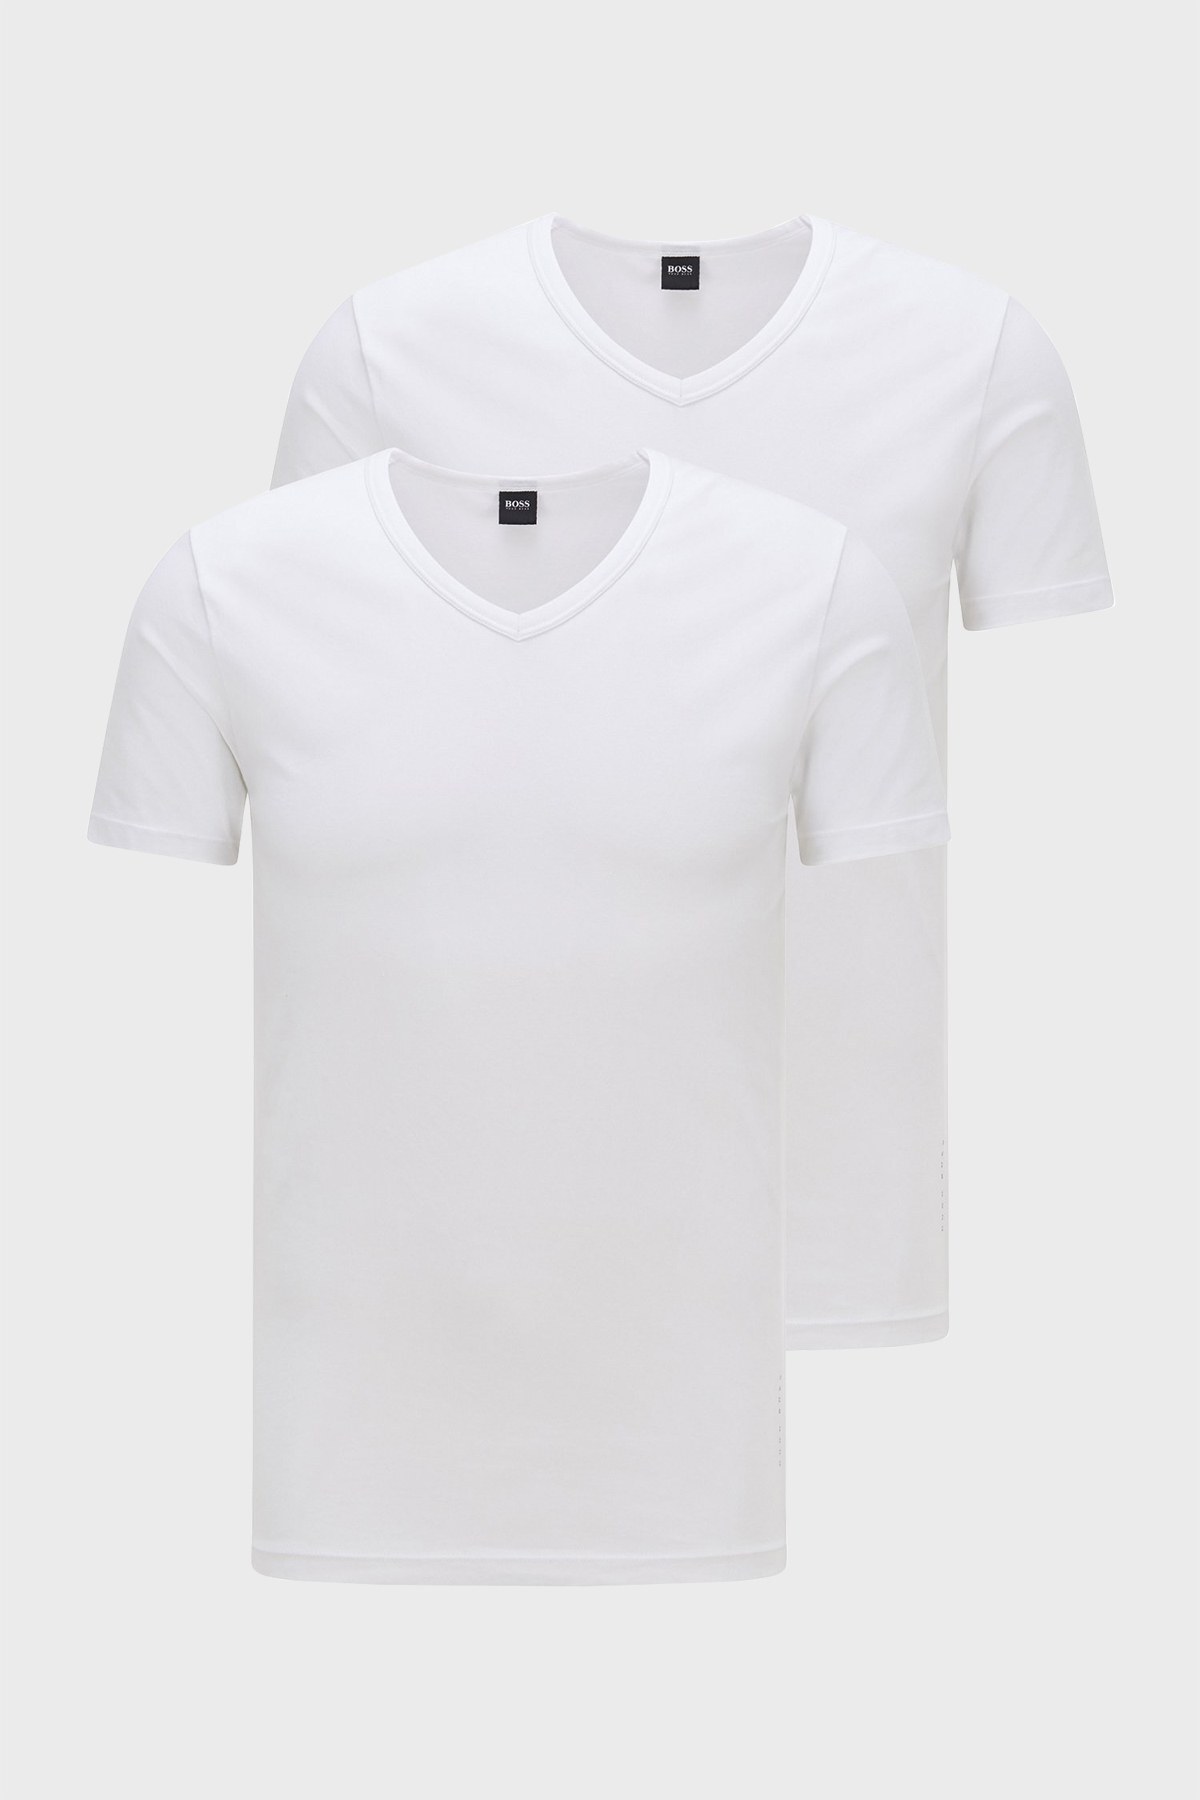 Hugo Boss Slim Fit V Yaka 2 Pack Erkek T Shirt 50325408 100 BEYAZ